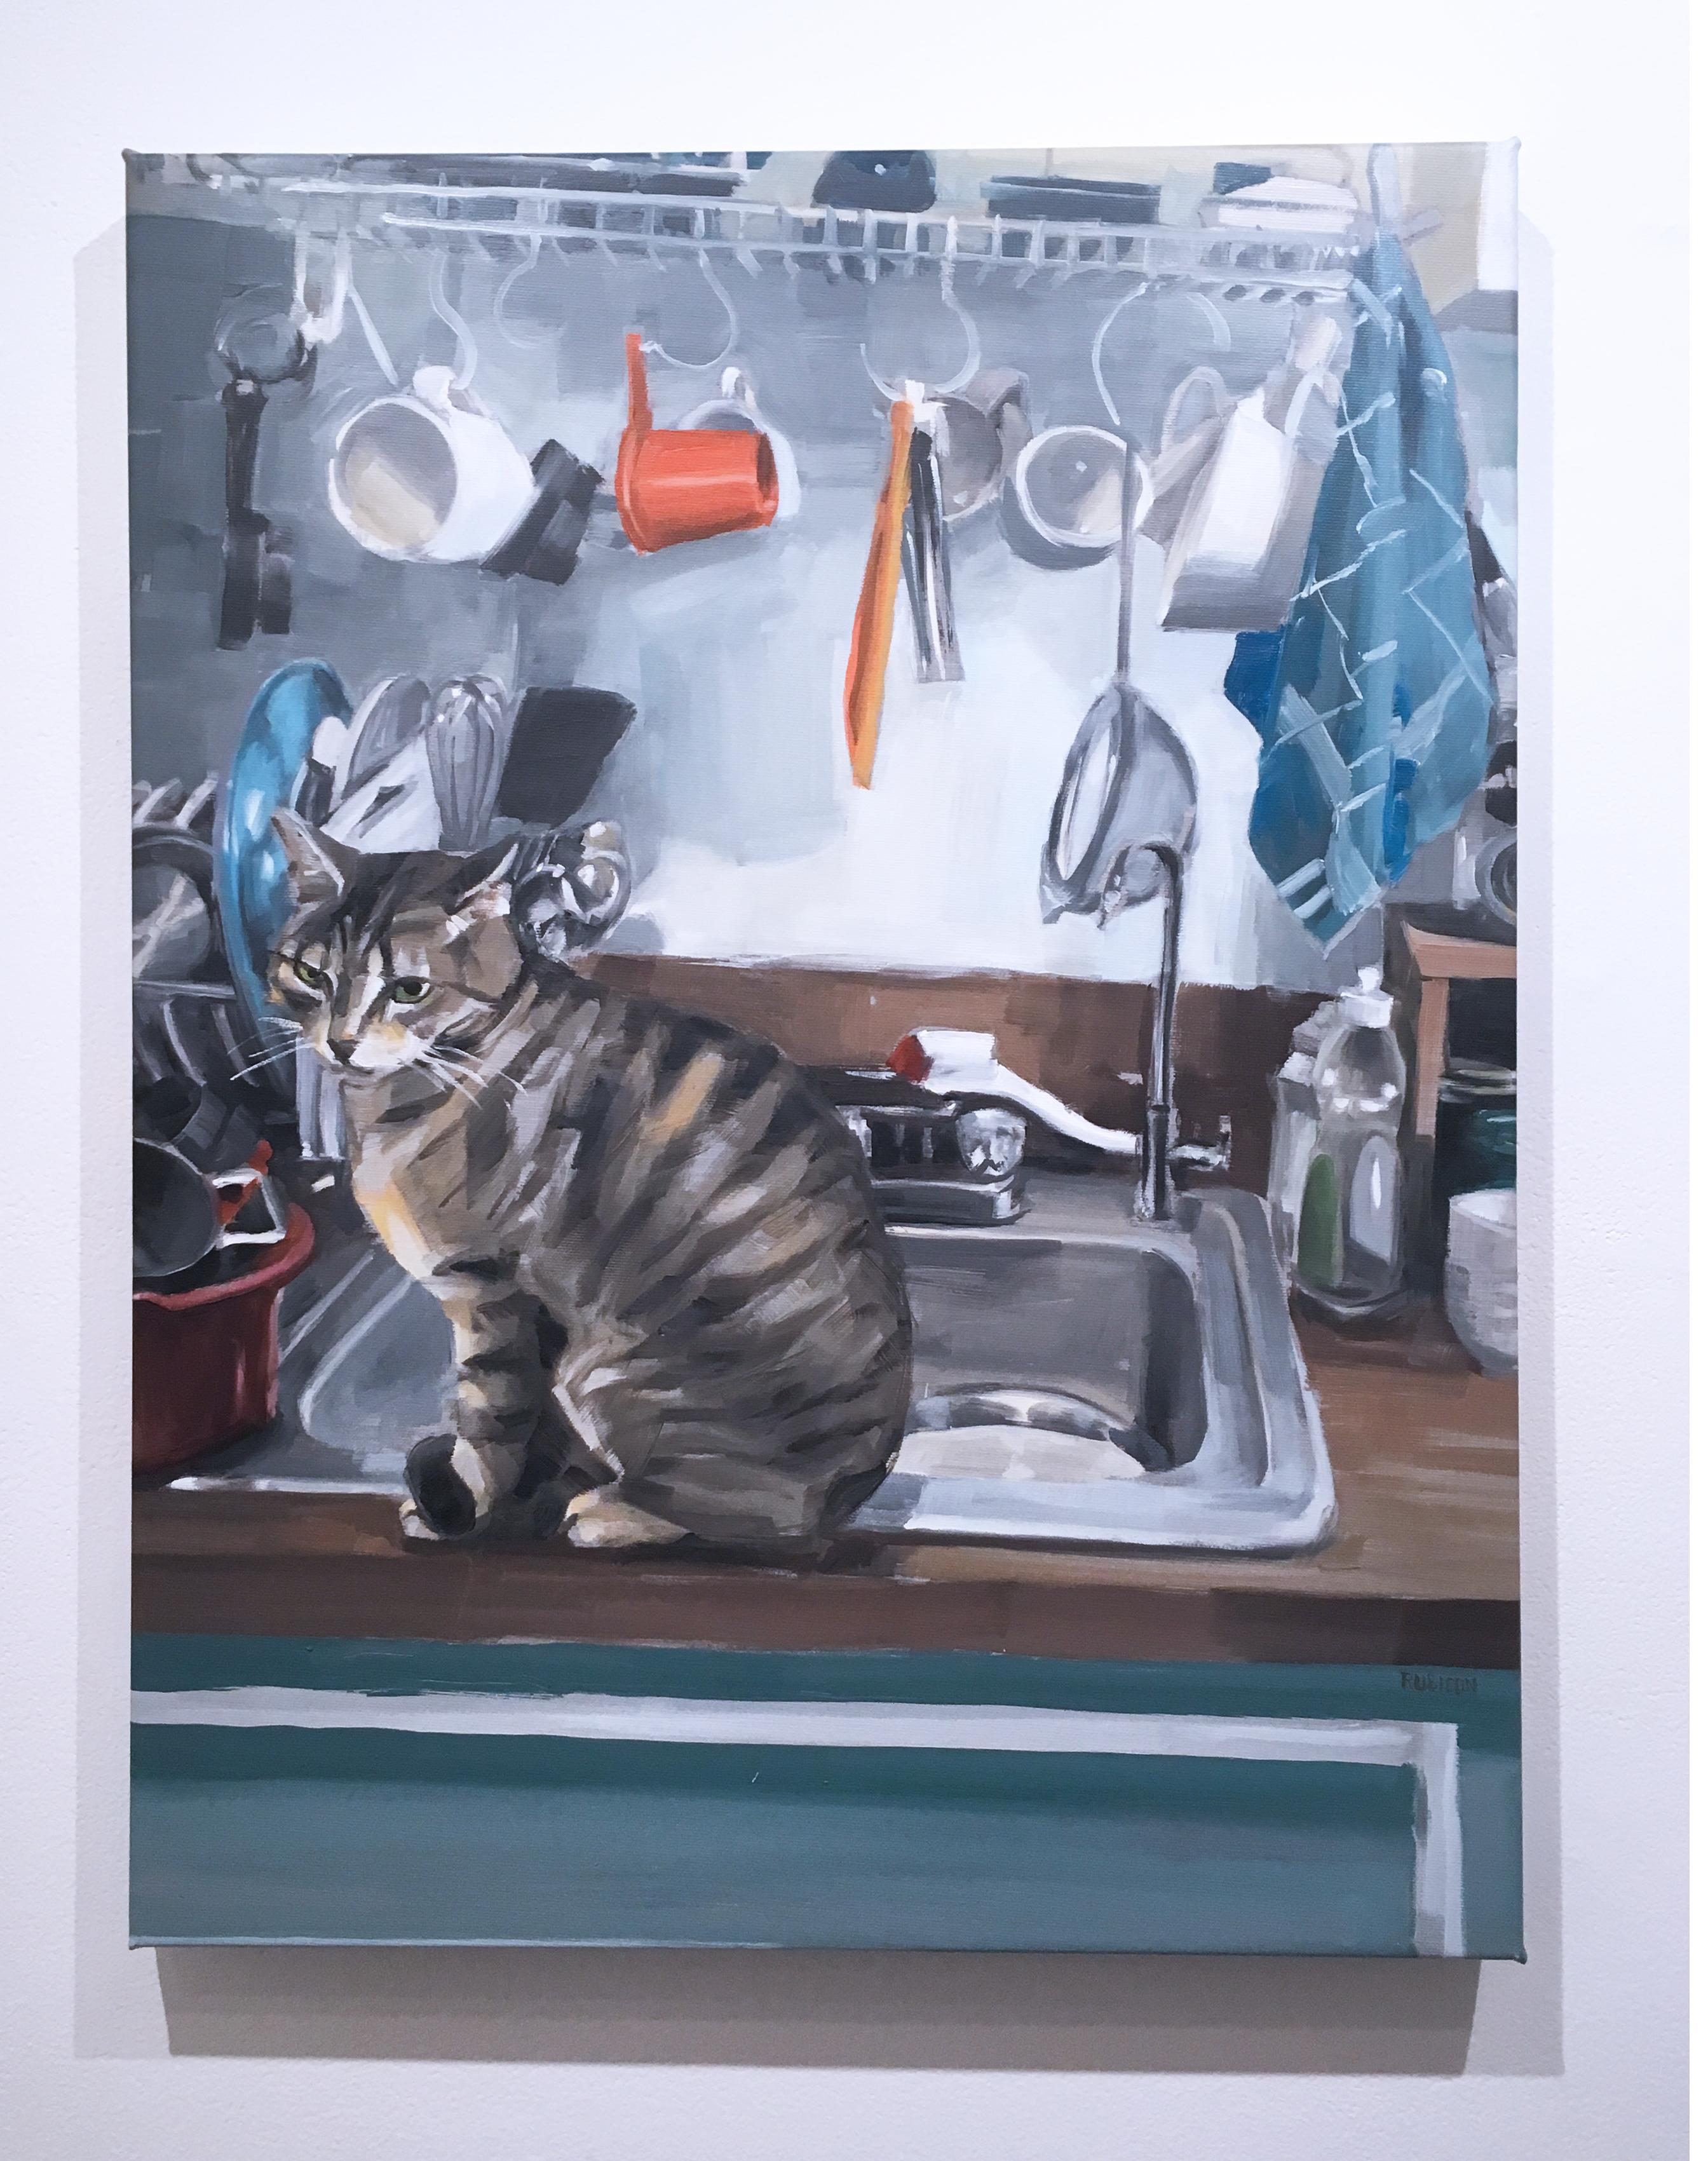 Billy im Waschbecken – Painting von RU8ICON1